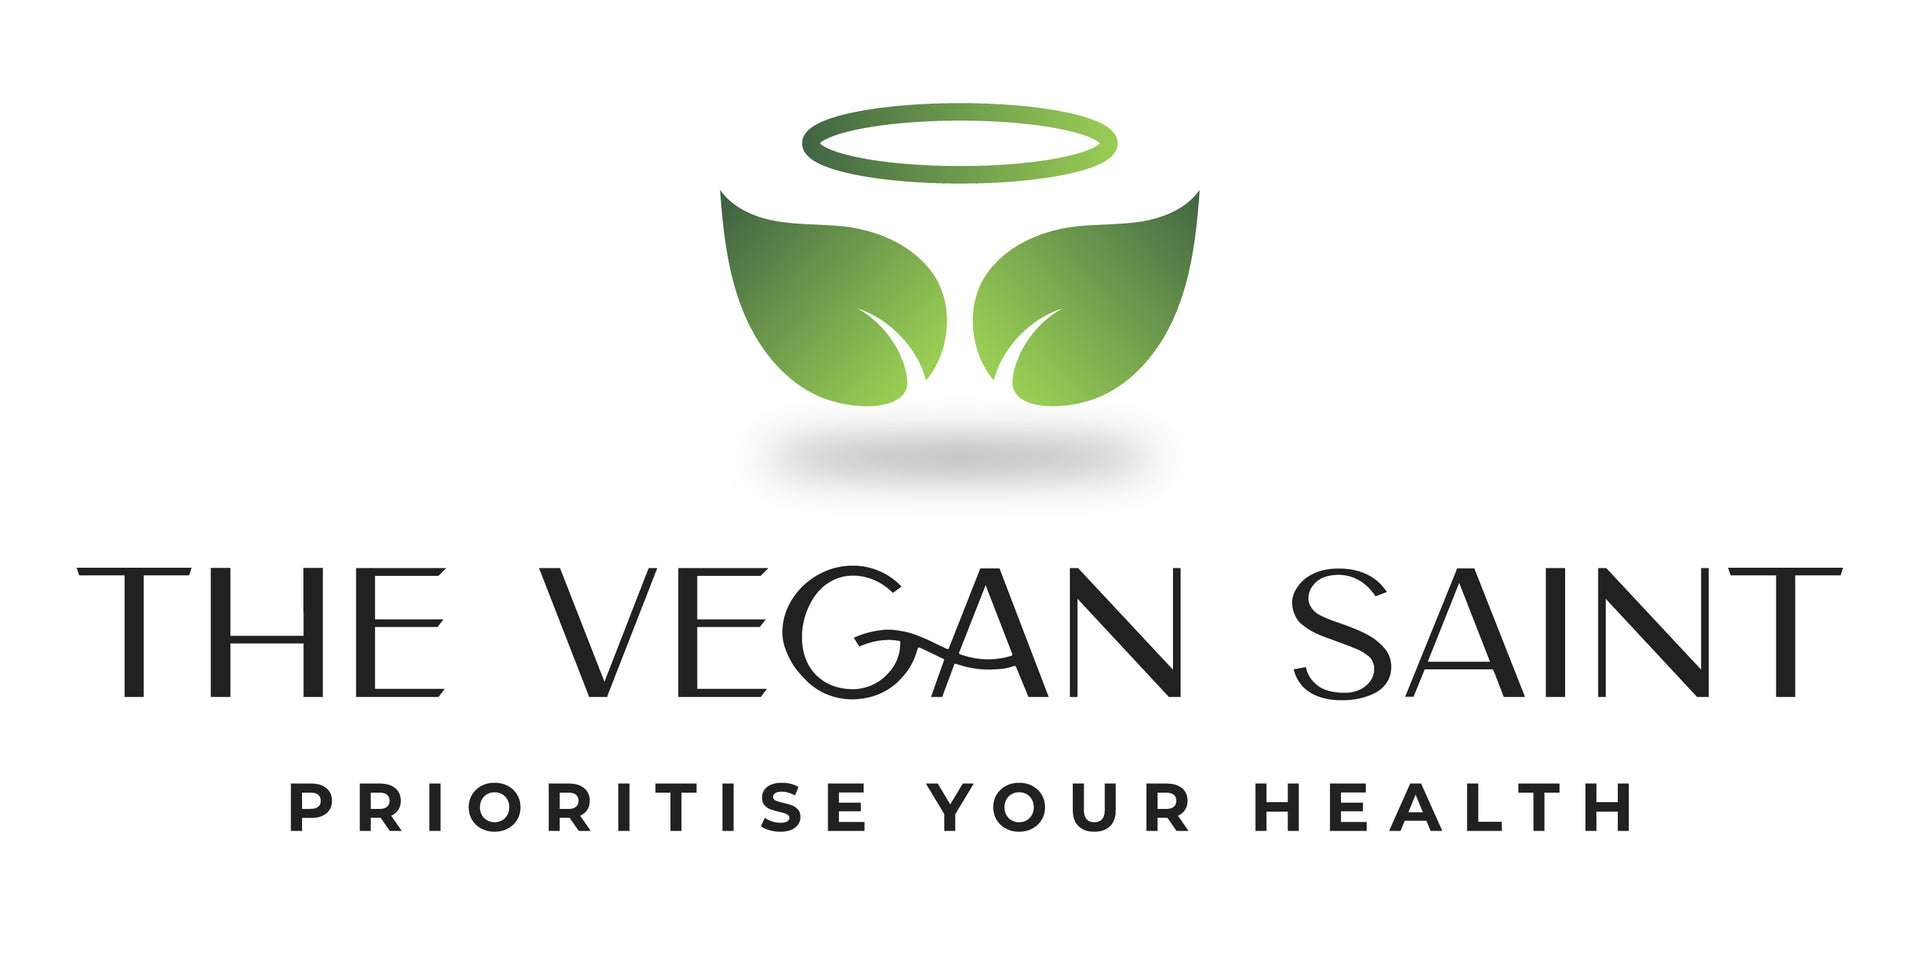 Video laden: Welkom op de site van The Vegan Saint.